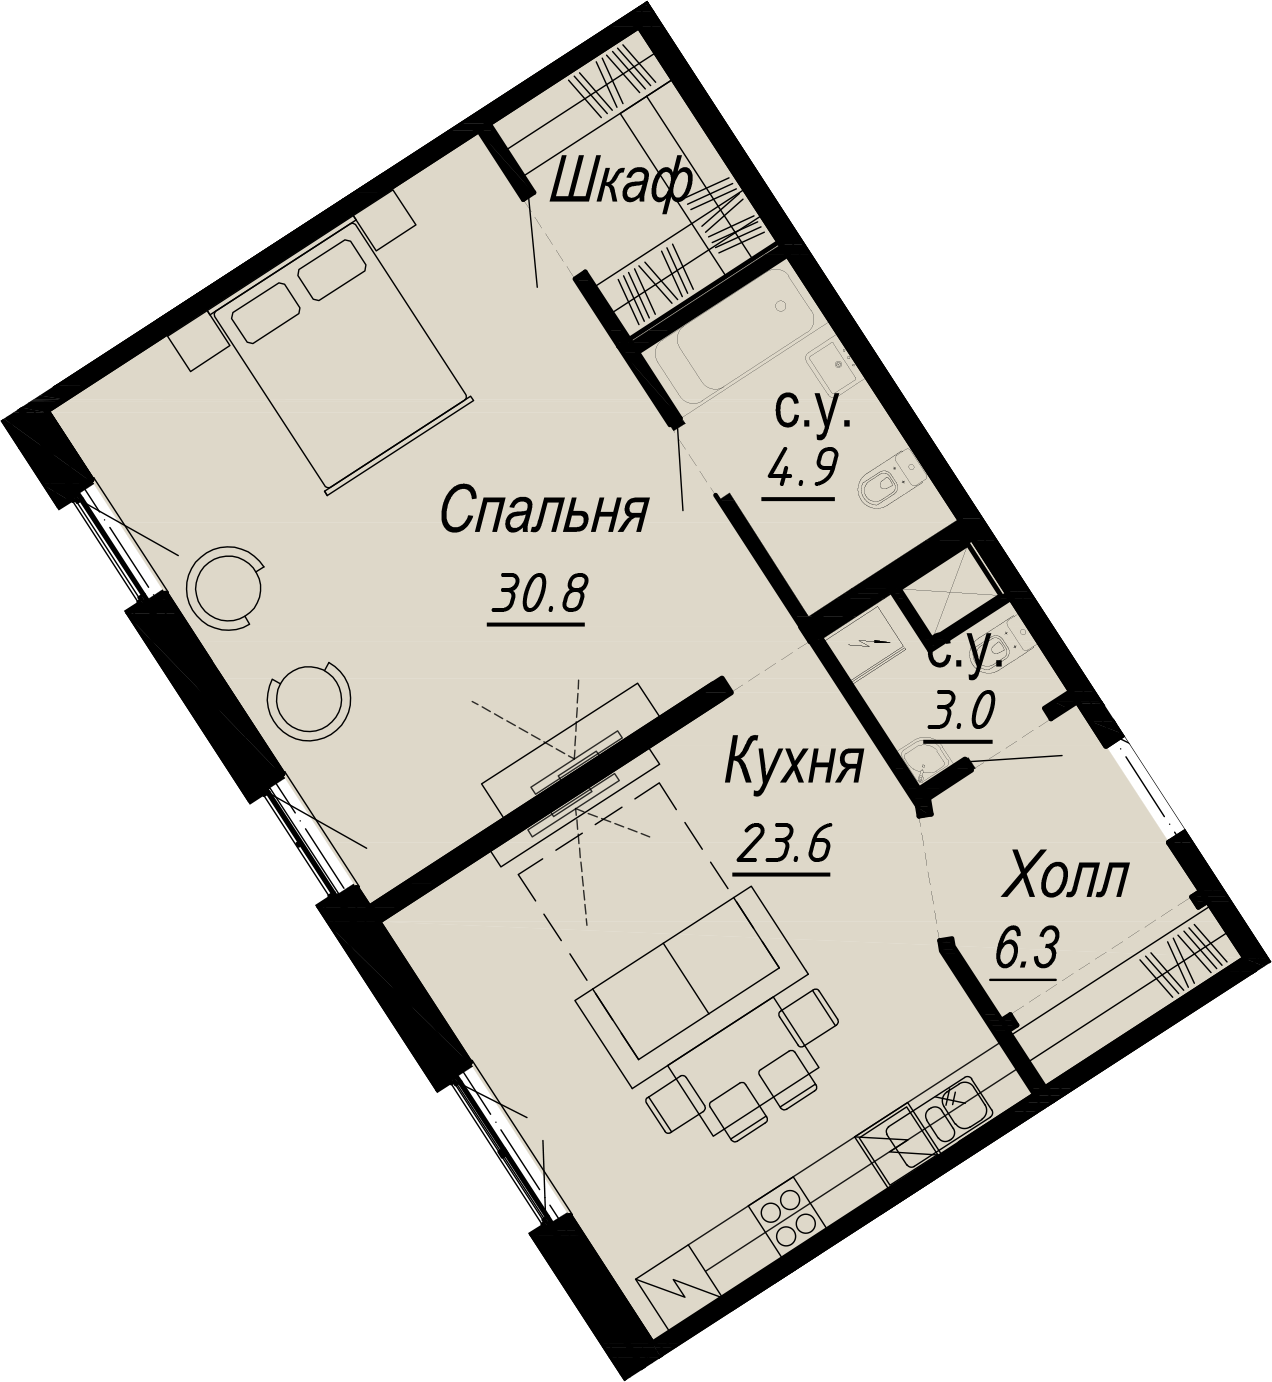 1-комнатная квартира  №2-5 в Meltzer Hall: 68.6 м², этаж 5 - купить в Санкт-Петербурге